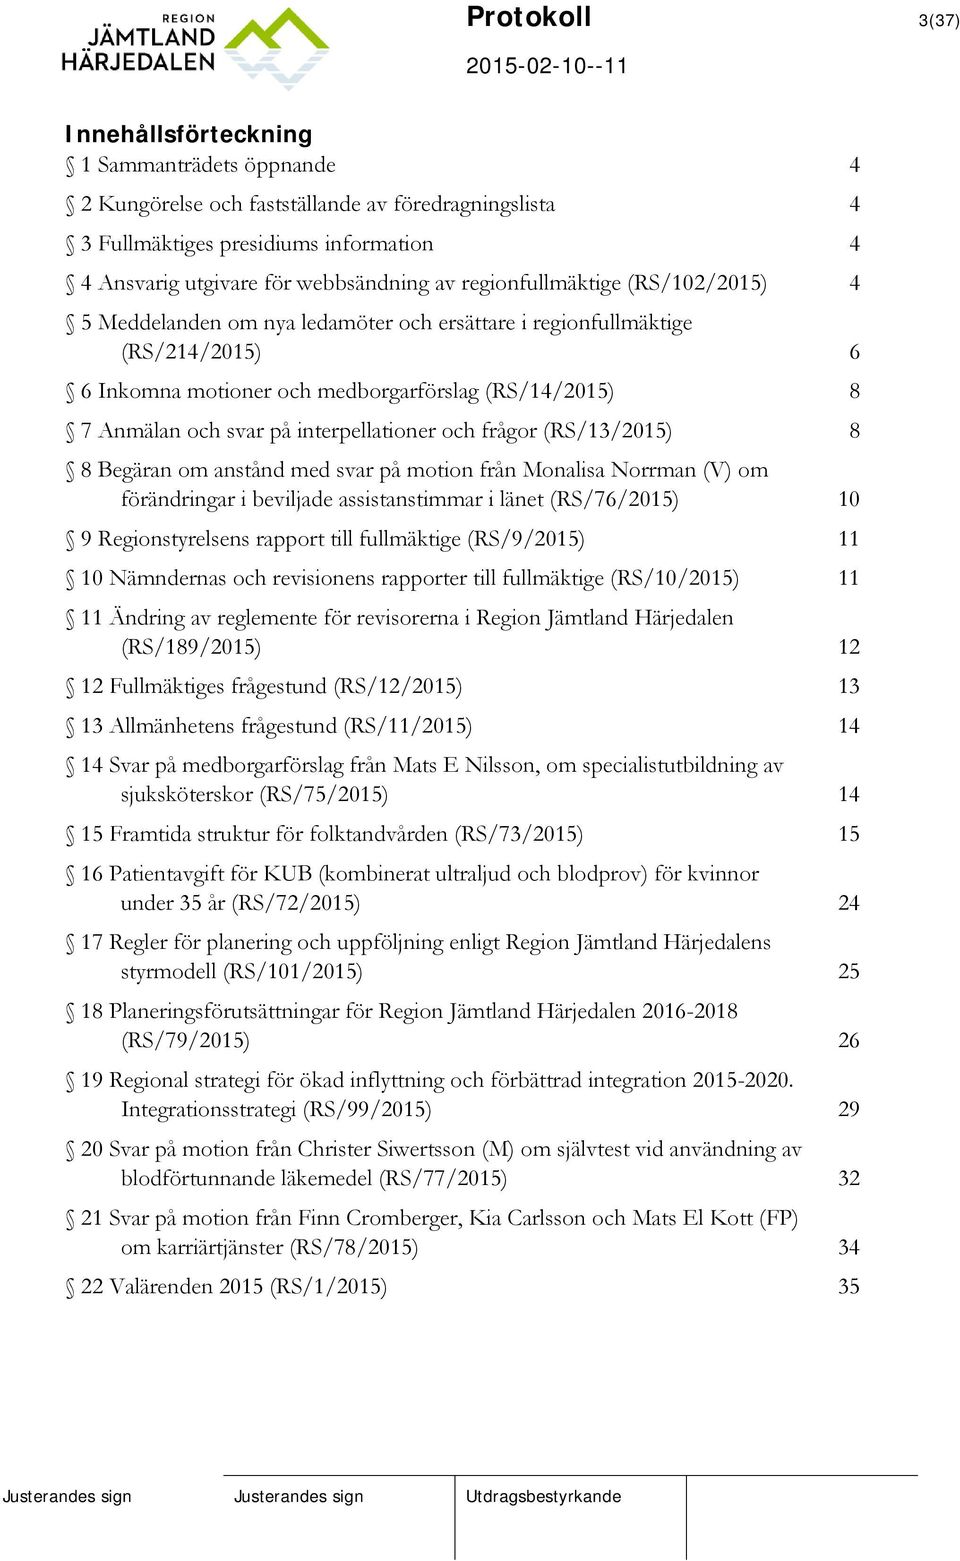 interpellationer och frågor (RS/13/2015) 8 8 Begäran om anstånd med svar på motion från Monalisa Norrman (V) om förändringar i beviljade assistanstimmar i länet (RS/76/2015) 10 9 Regionstyrelsens